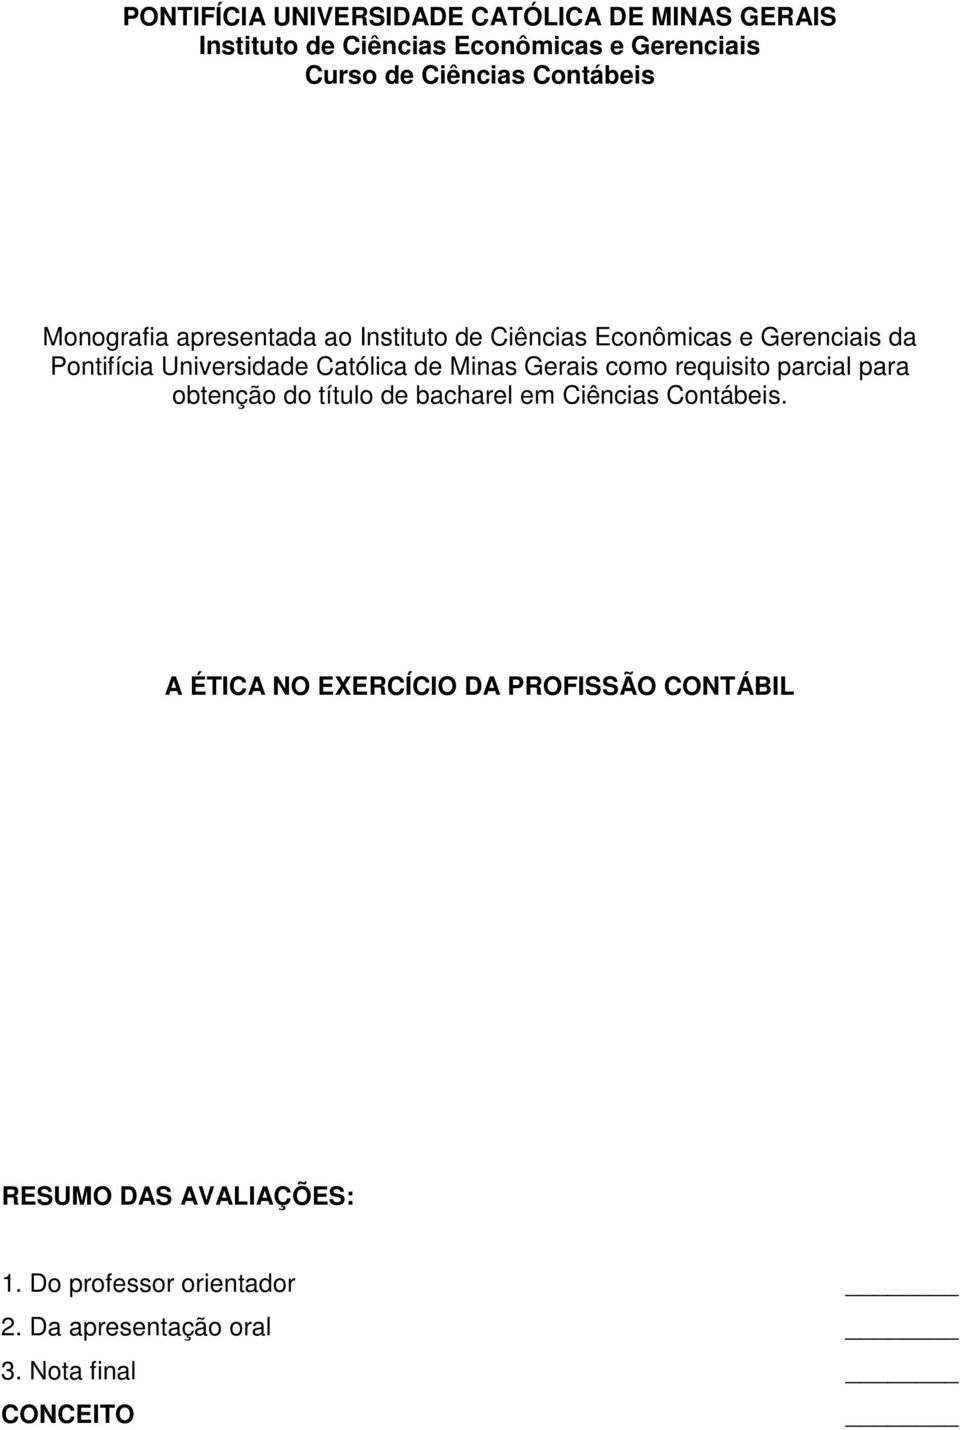 Católica de Minas Gerais como requisito parcial para obtenção do título de bacharel em Ciências Contábeis.